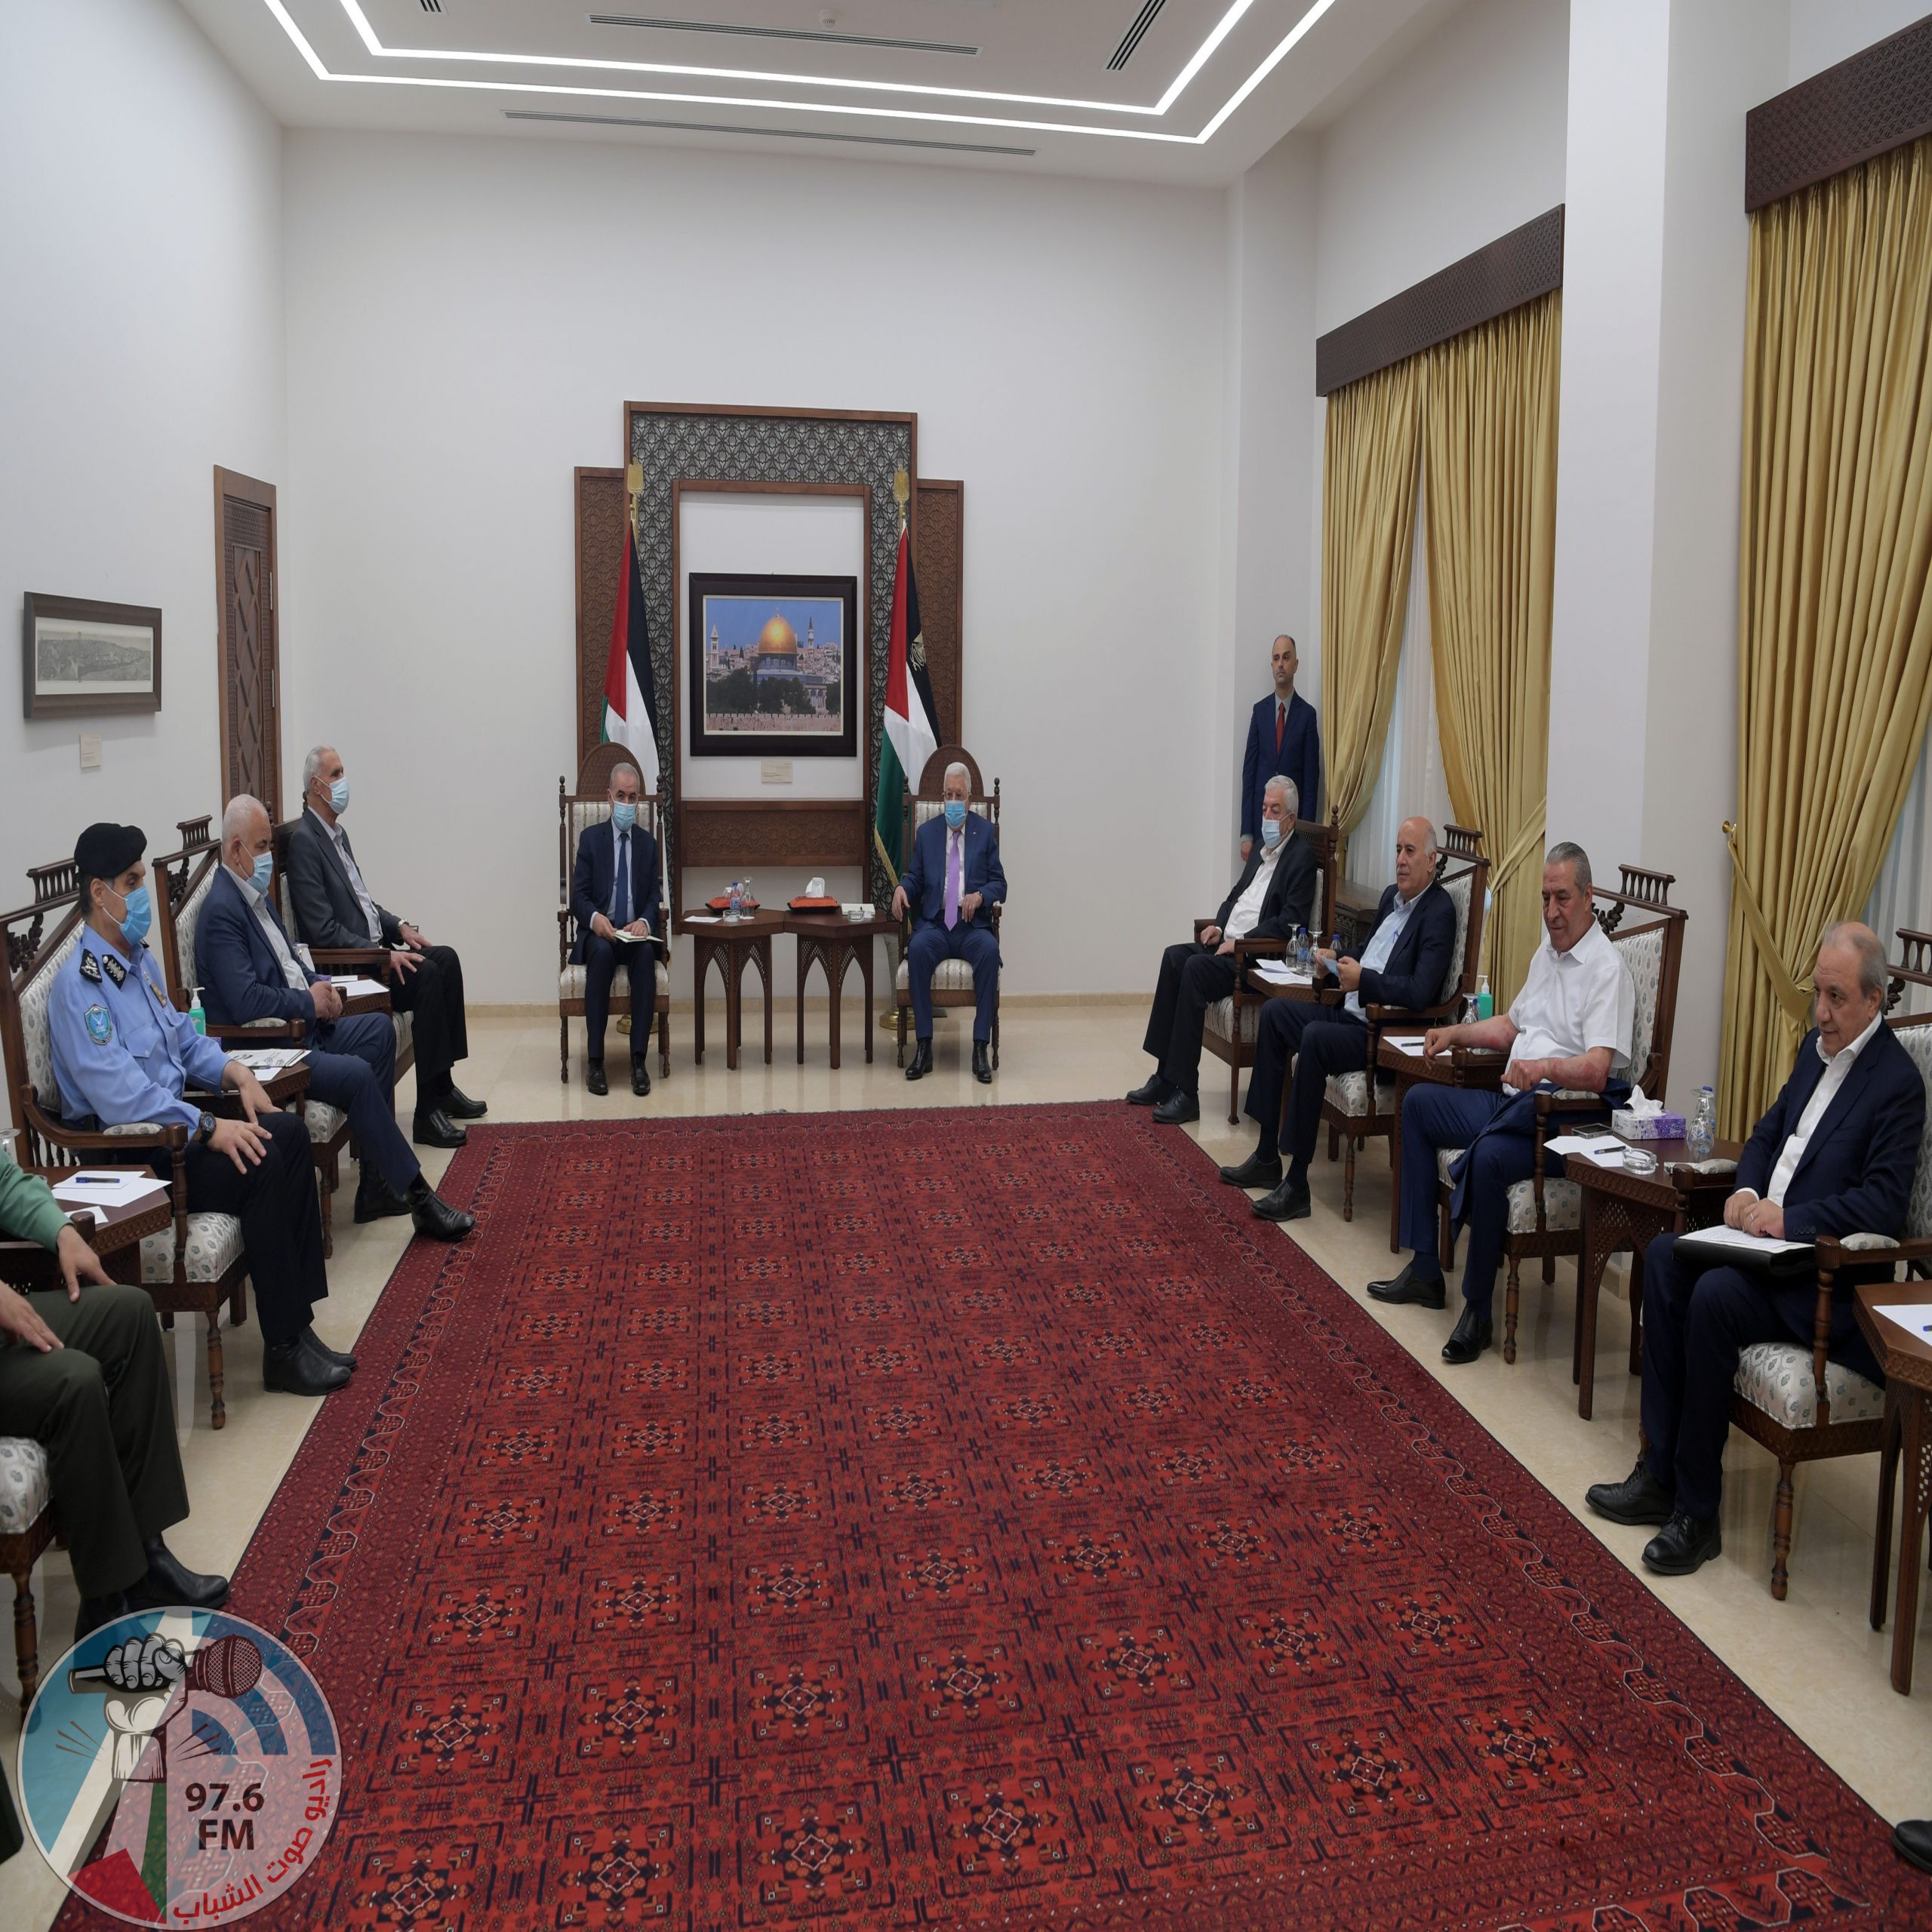 الرئيس يترأس اجتماعا طارئا لمتابعة الوضع في الأرض الفلسطينية كافة